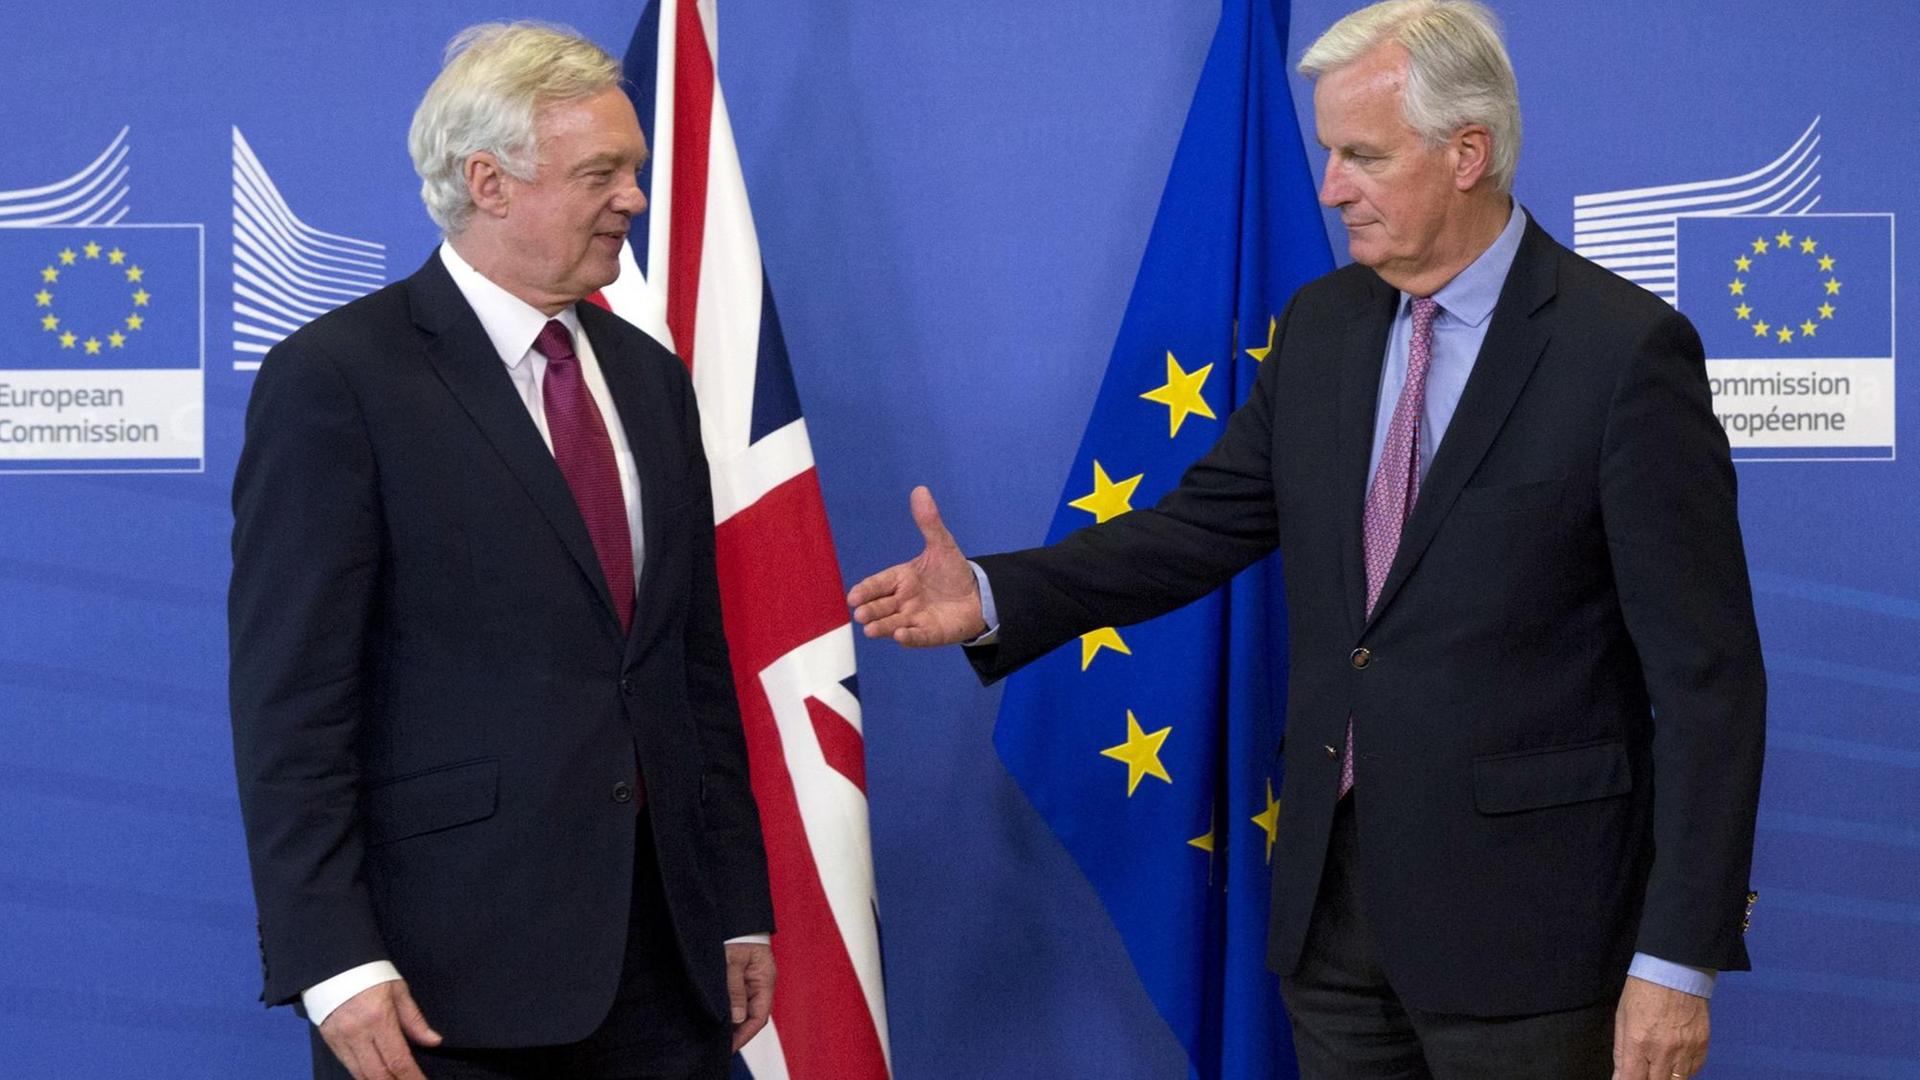 EU-Chefunterhändler Michel Barnier (r) und der britische Brexit-Minister David Davis begrüßen sich am 19.06.2017 bei ihrer Ankunft in Brüssel vor einem gemeinsamen Statement.